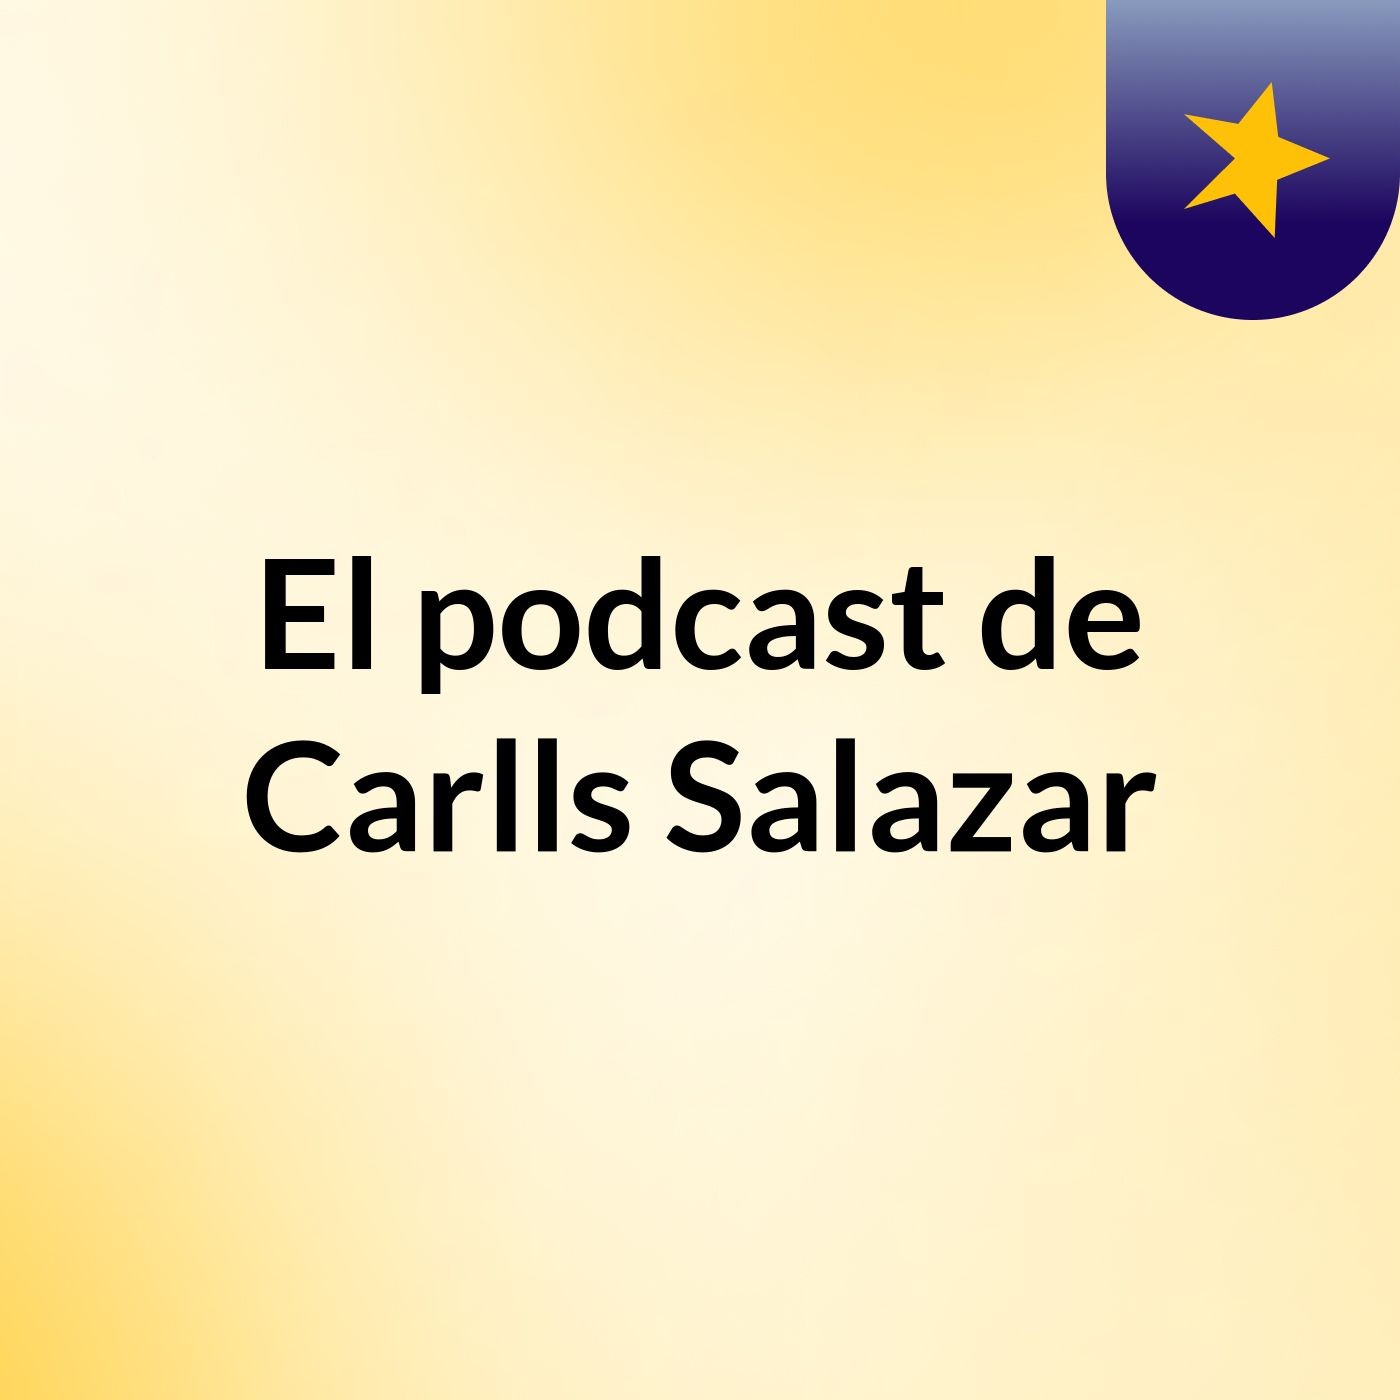 El podcast de Carlls Salazar